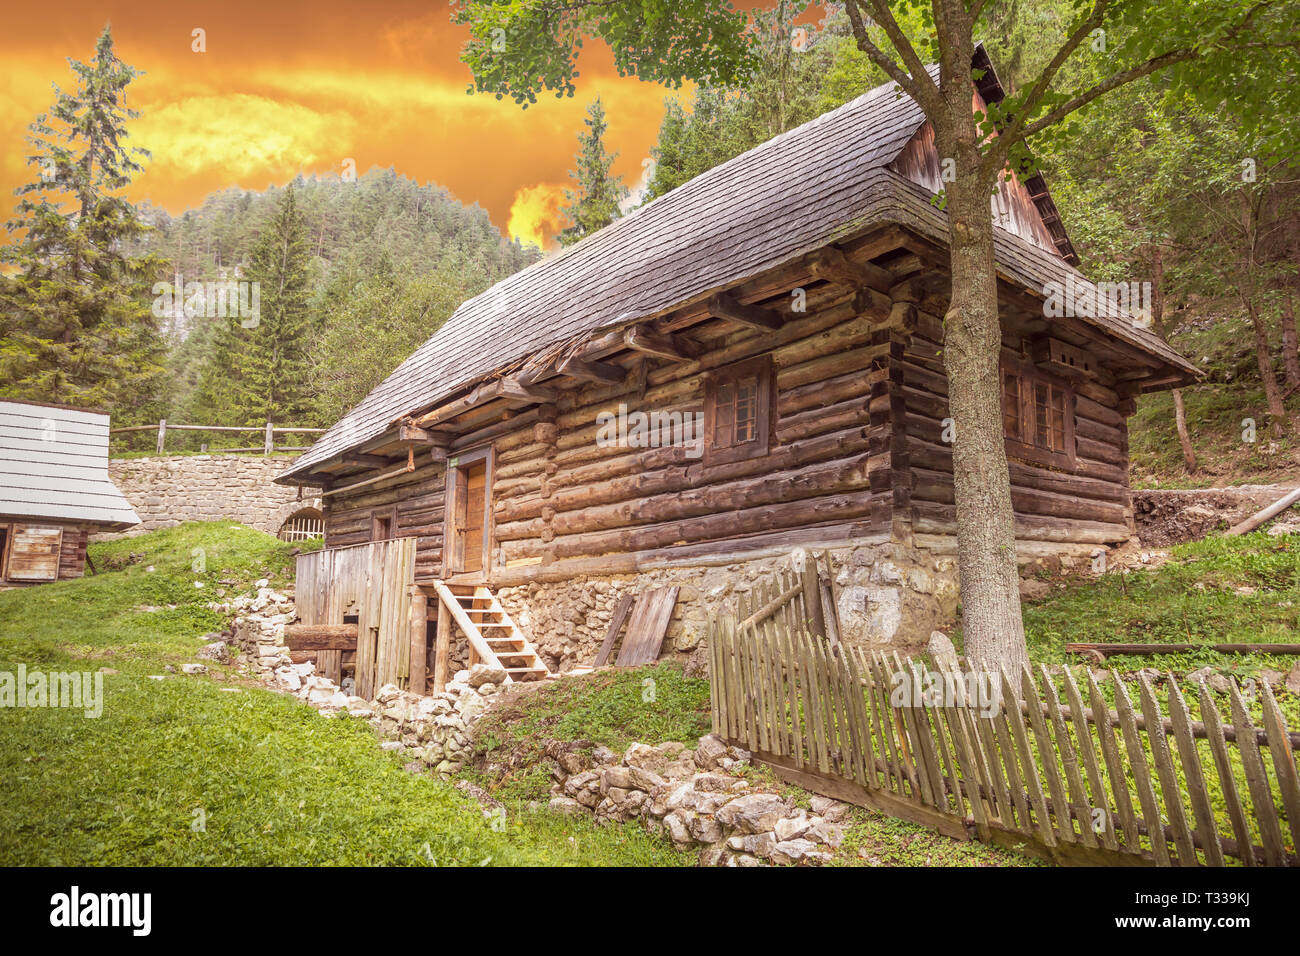 old wooden traditional hut at Kvacianska dolina, Slovakia Stock Photo